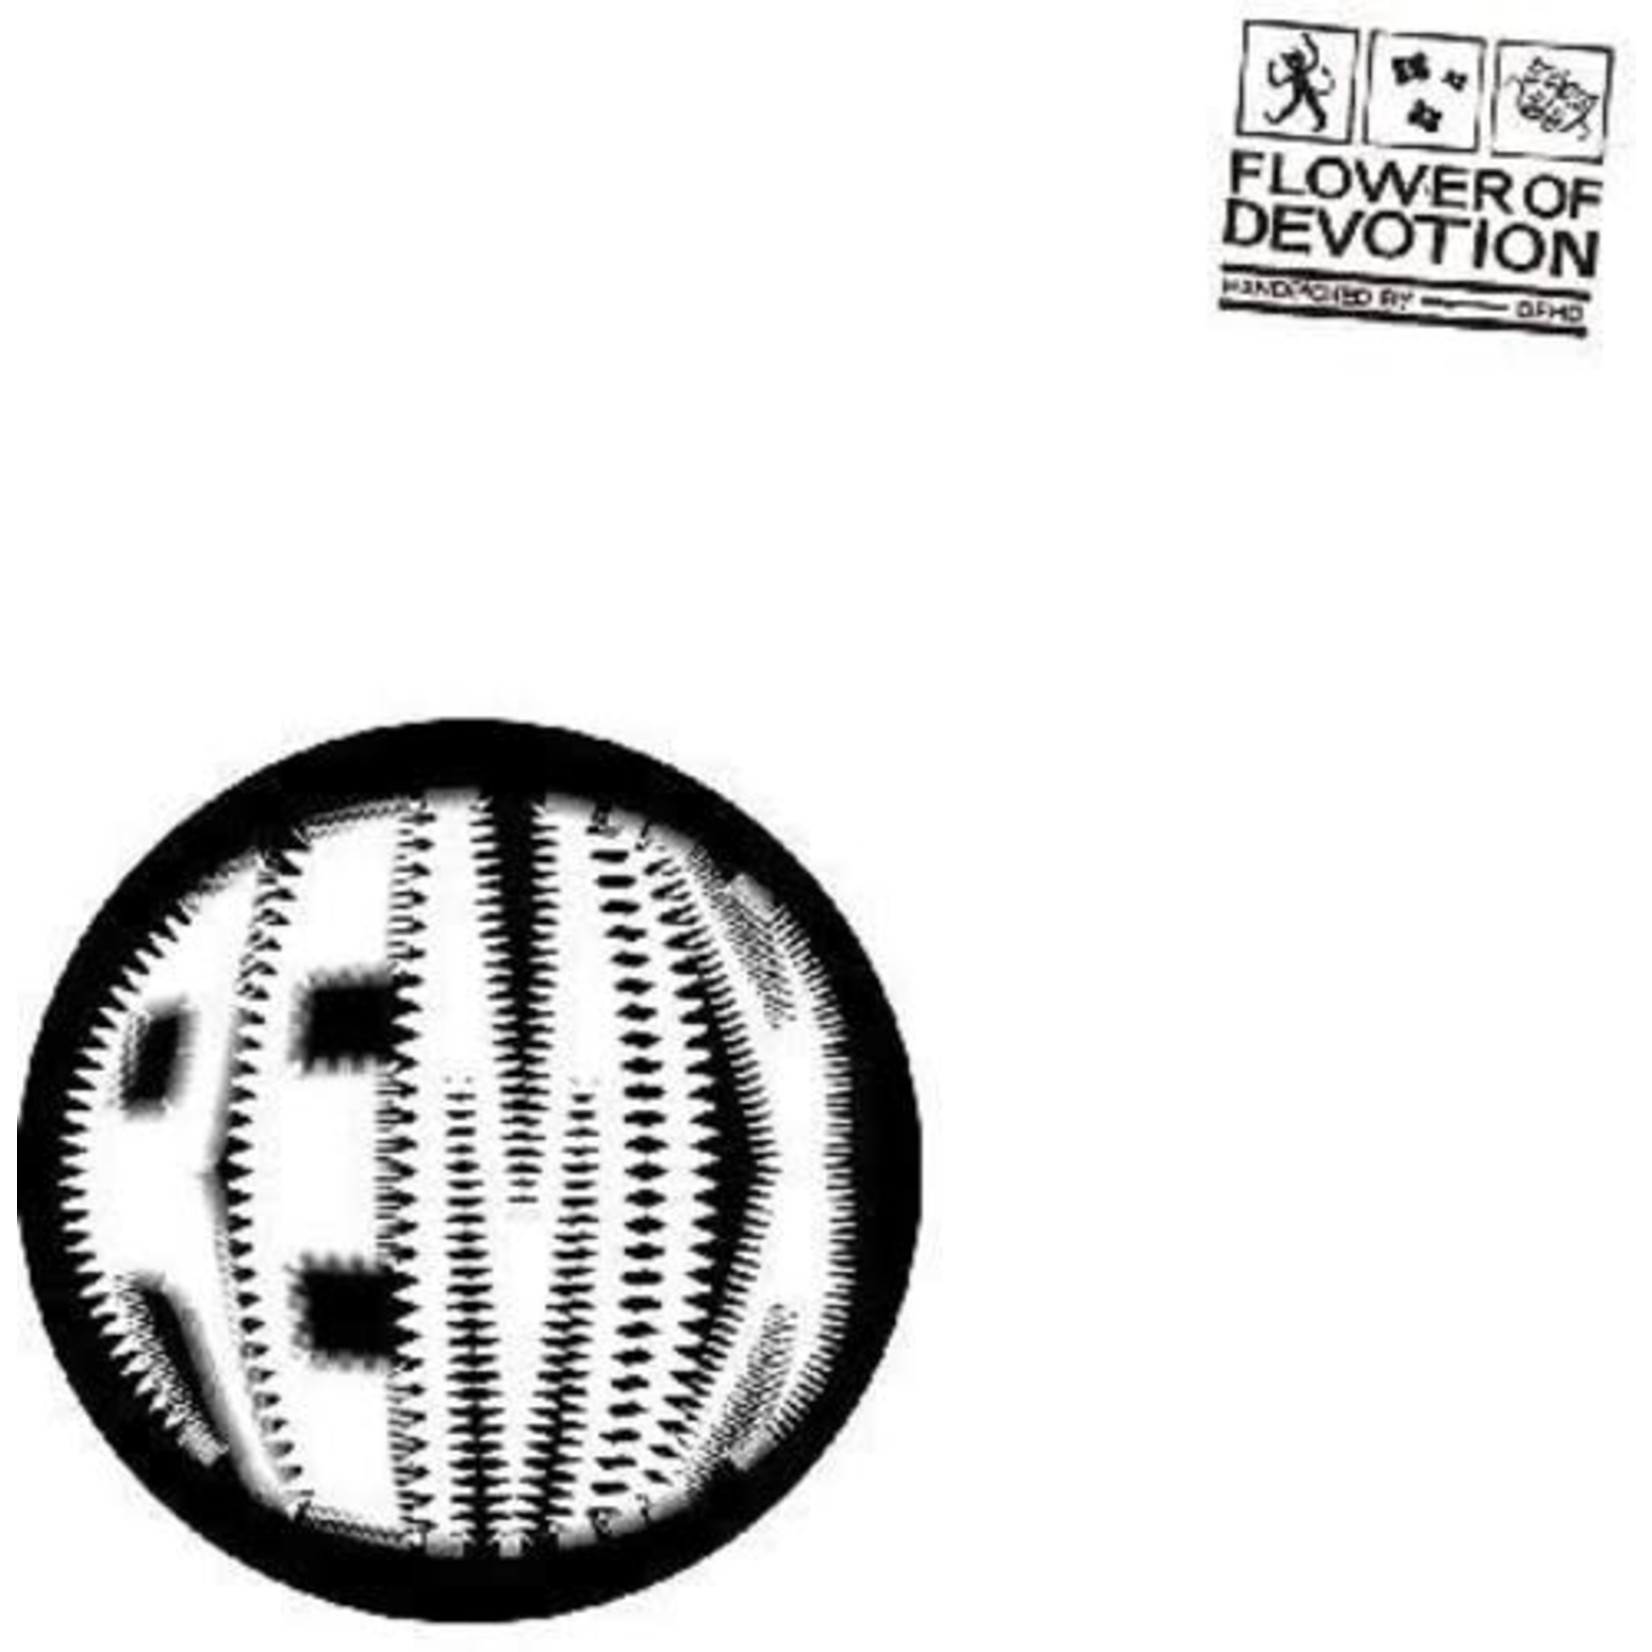 Fire Talk Dehd - Flower of Devotion Remixes (LP) [Pink]